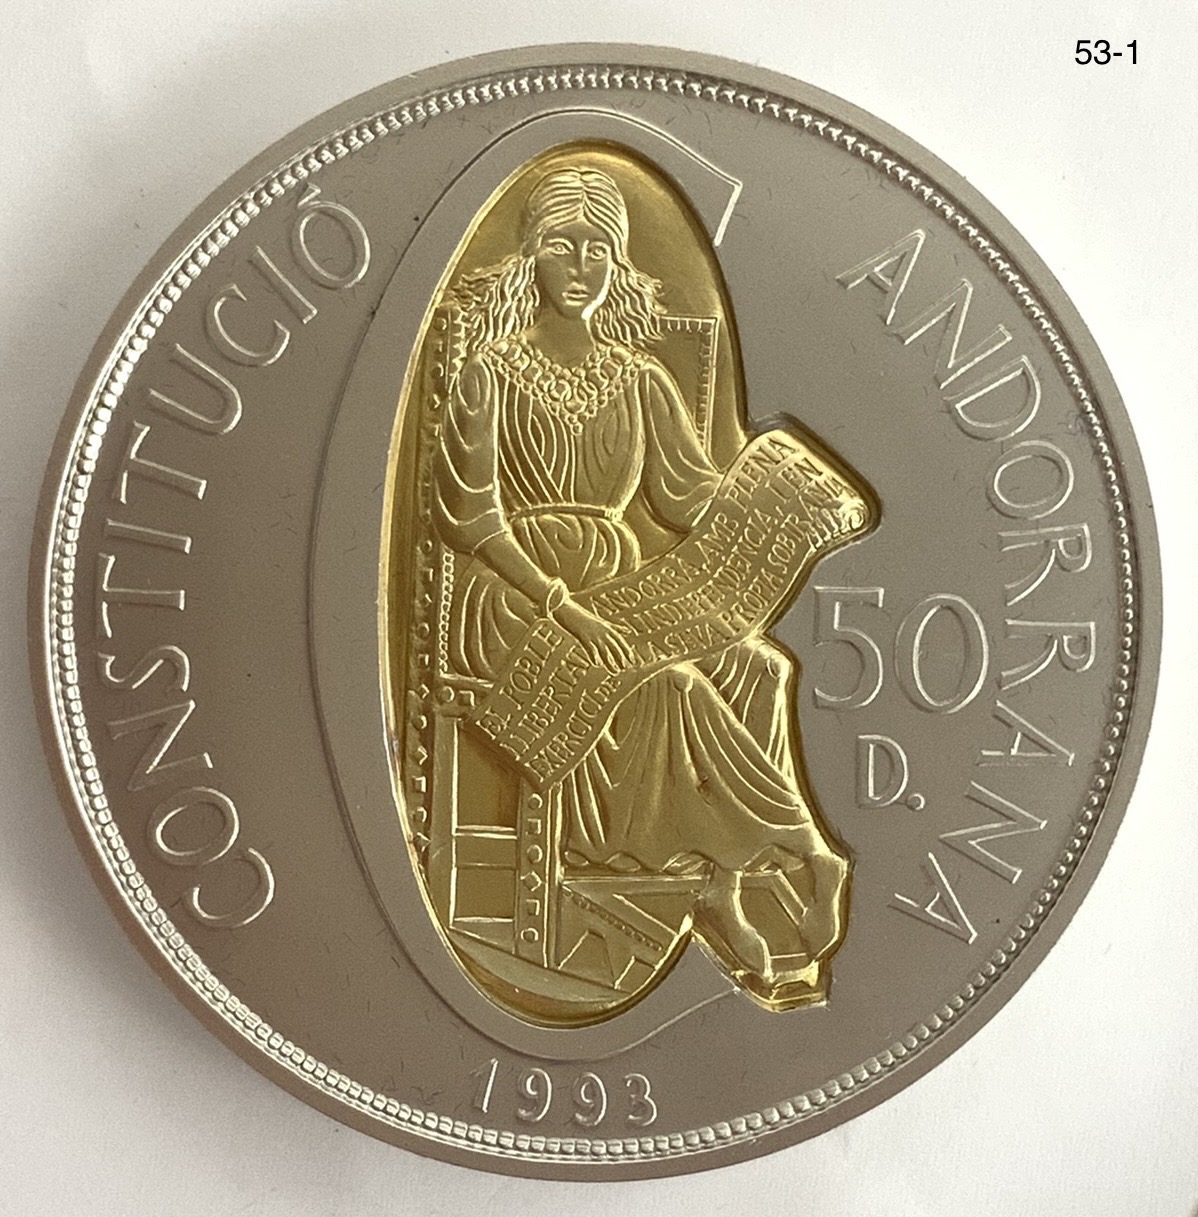 硬貨 アンドラ-Andorra. 未使用. 新憲法制定 50ディナール金・銀2色貨 1993年 KM104 | Taisei Auction